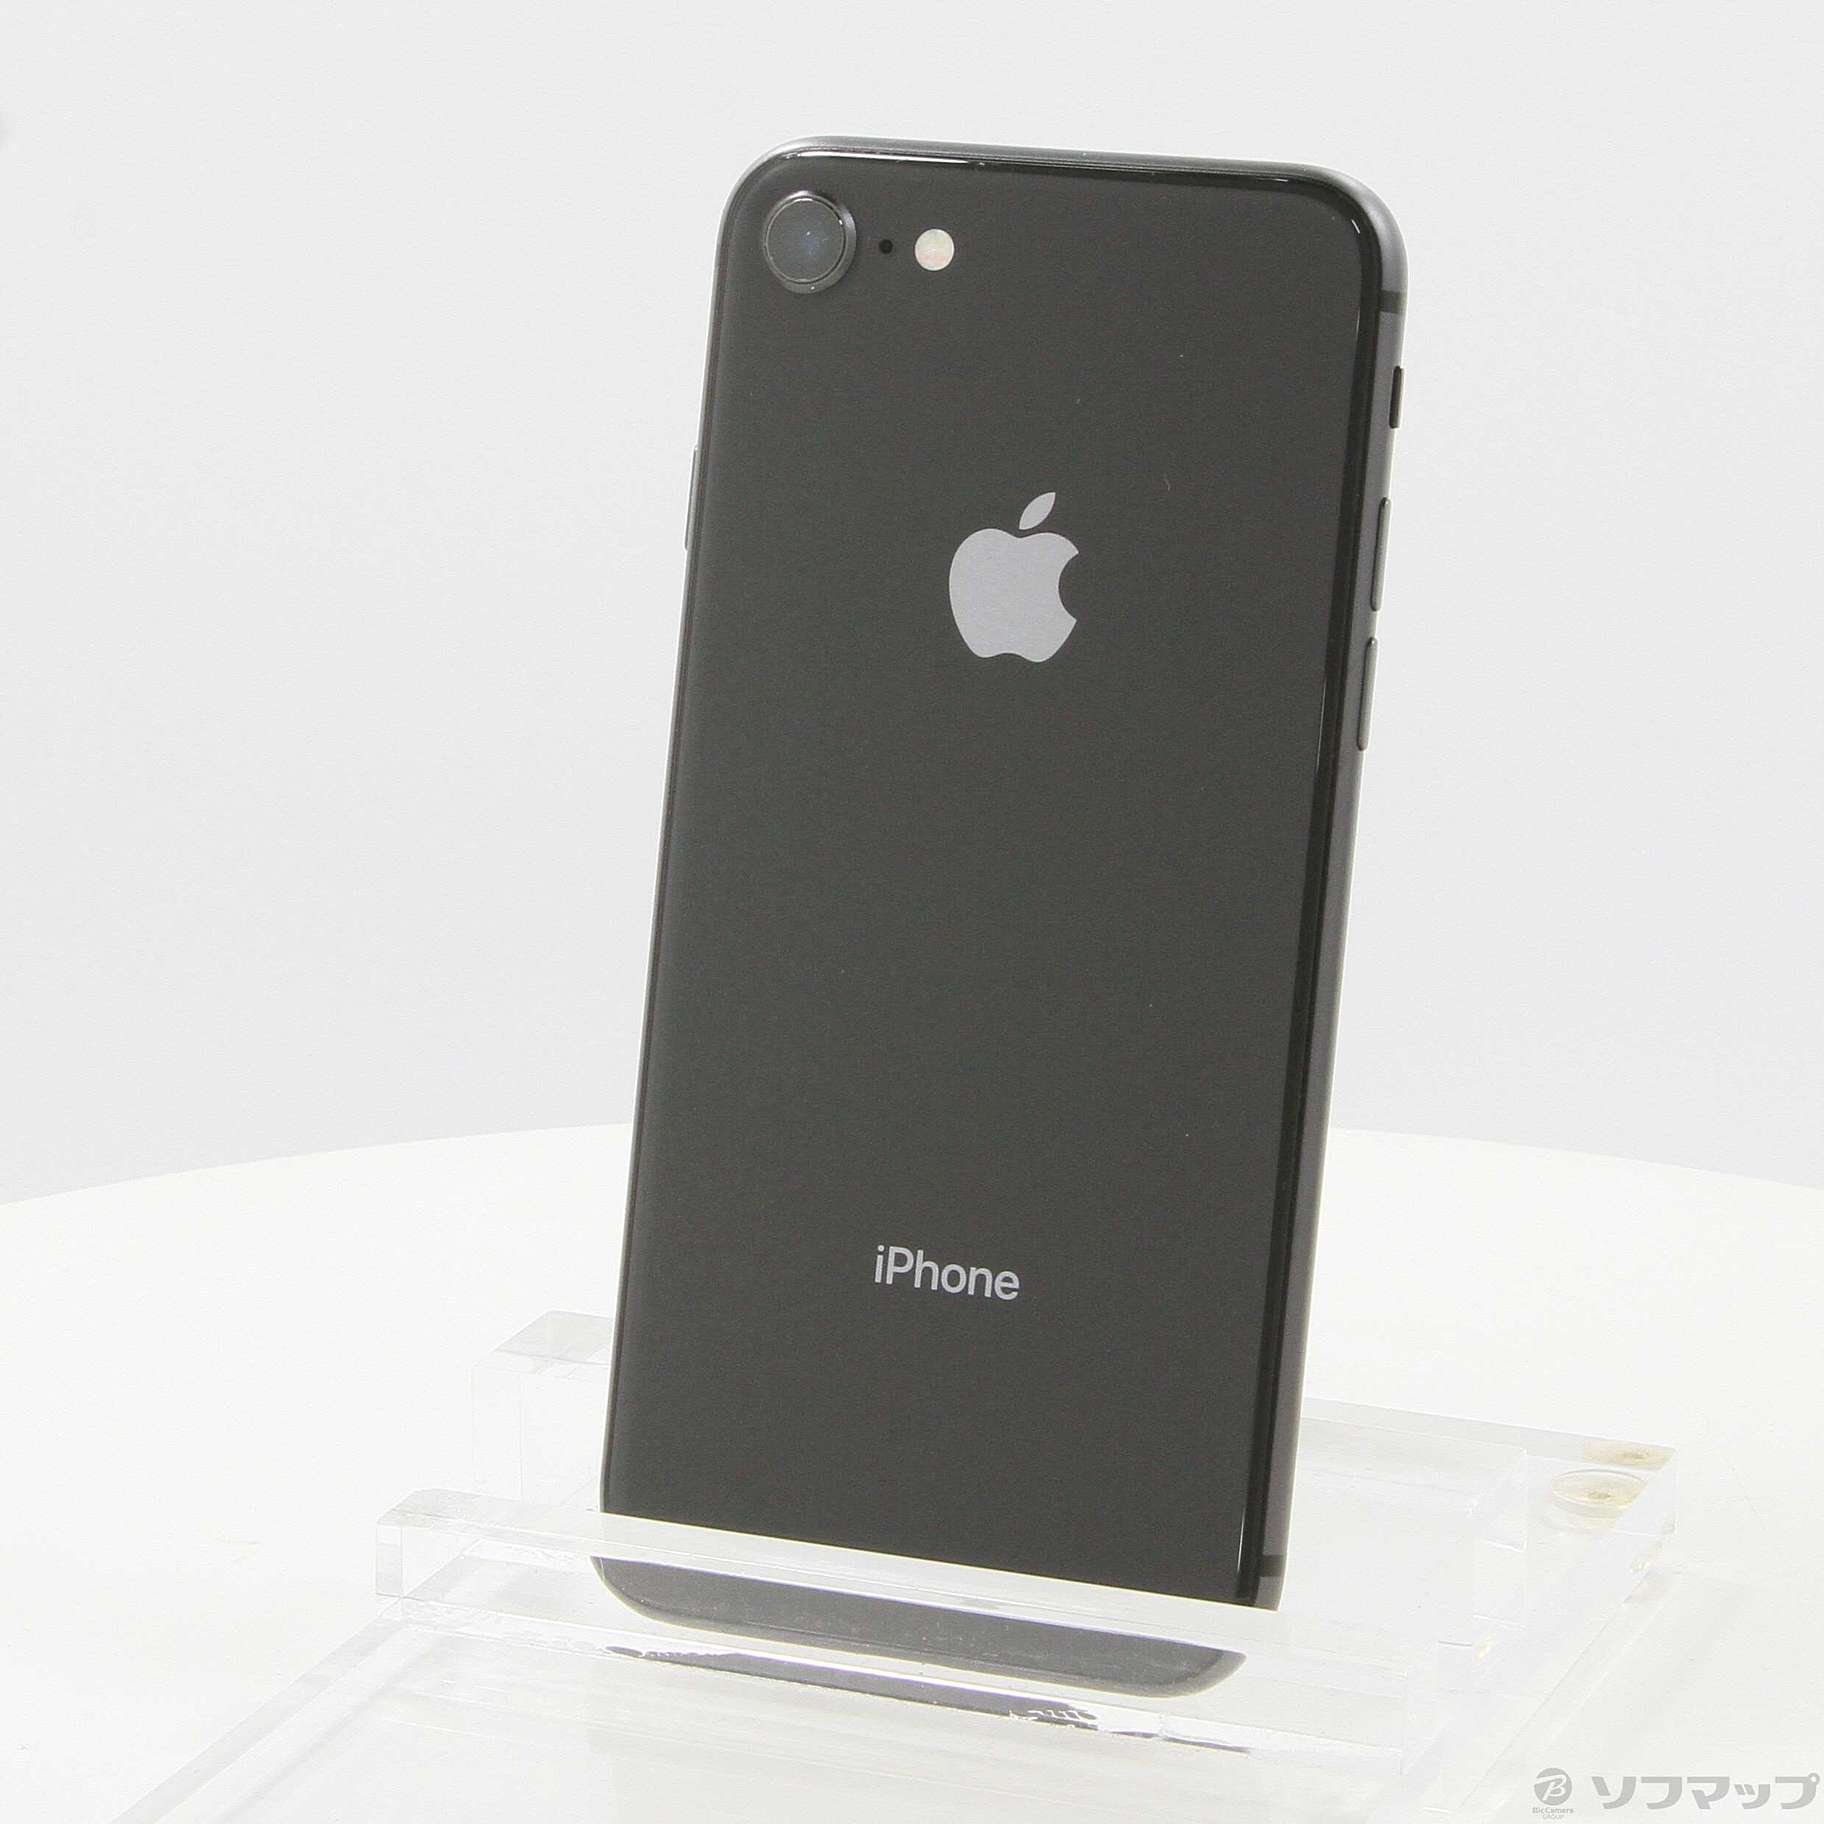 iPhone 8 Space Gray 256 GB SIMフリー - スマートフォン本体